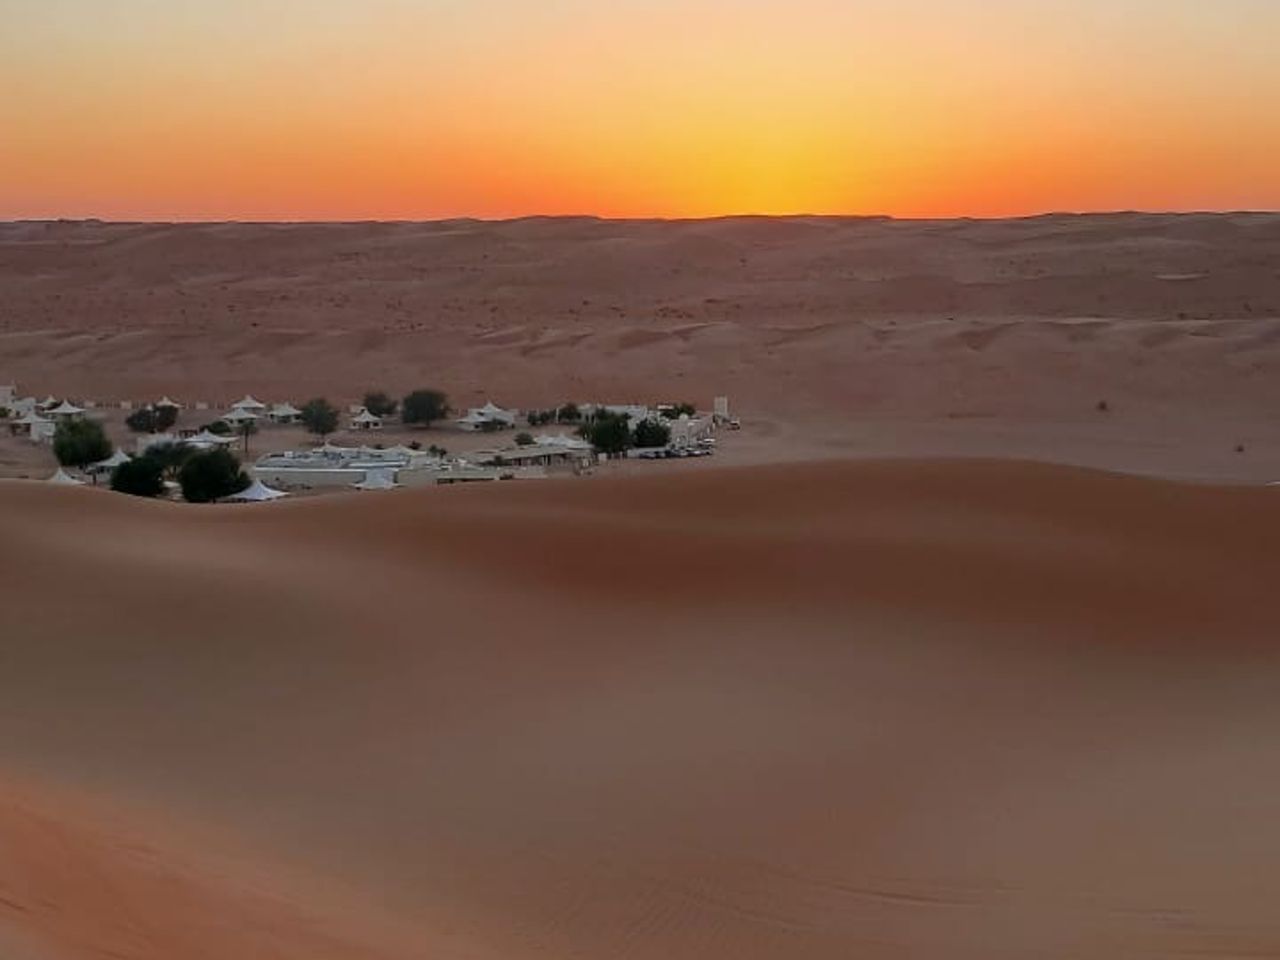 Джиппинг по пескам Вахибы + оазис Вади Бани Халид | Цена 530$, отзывы, описание экскурсии